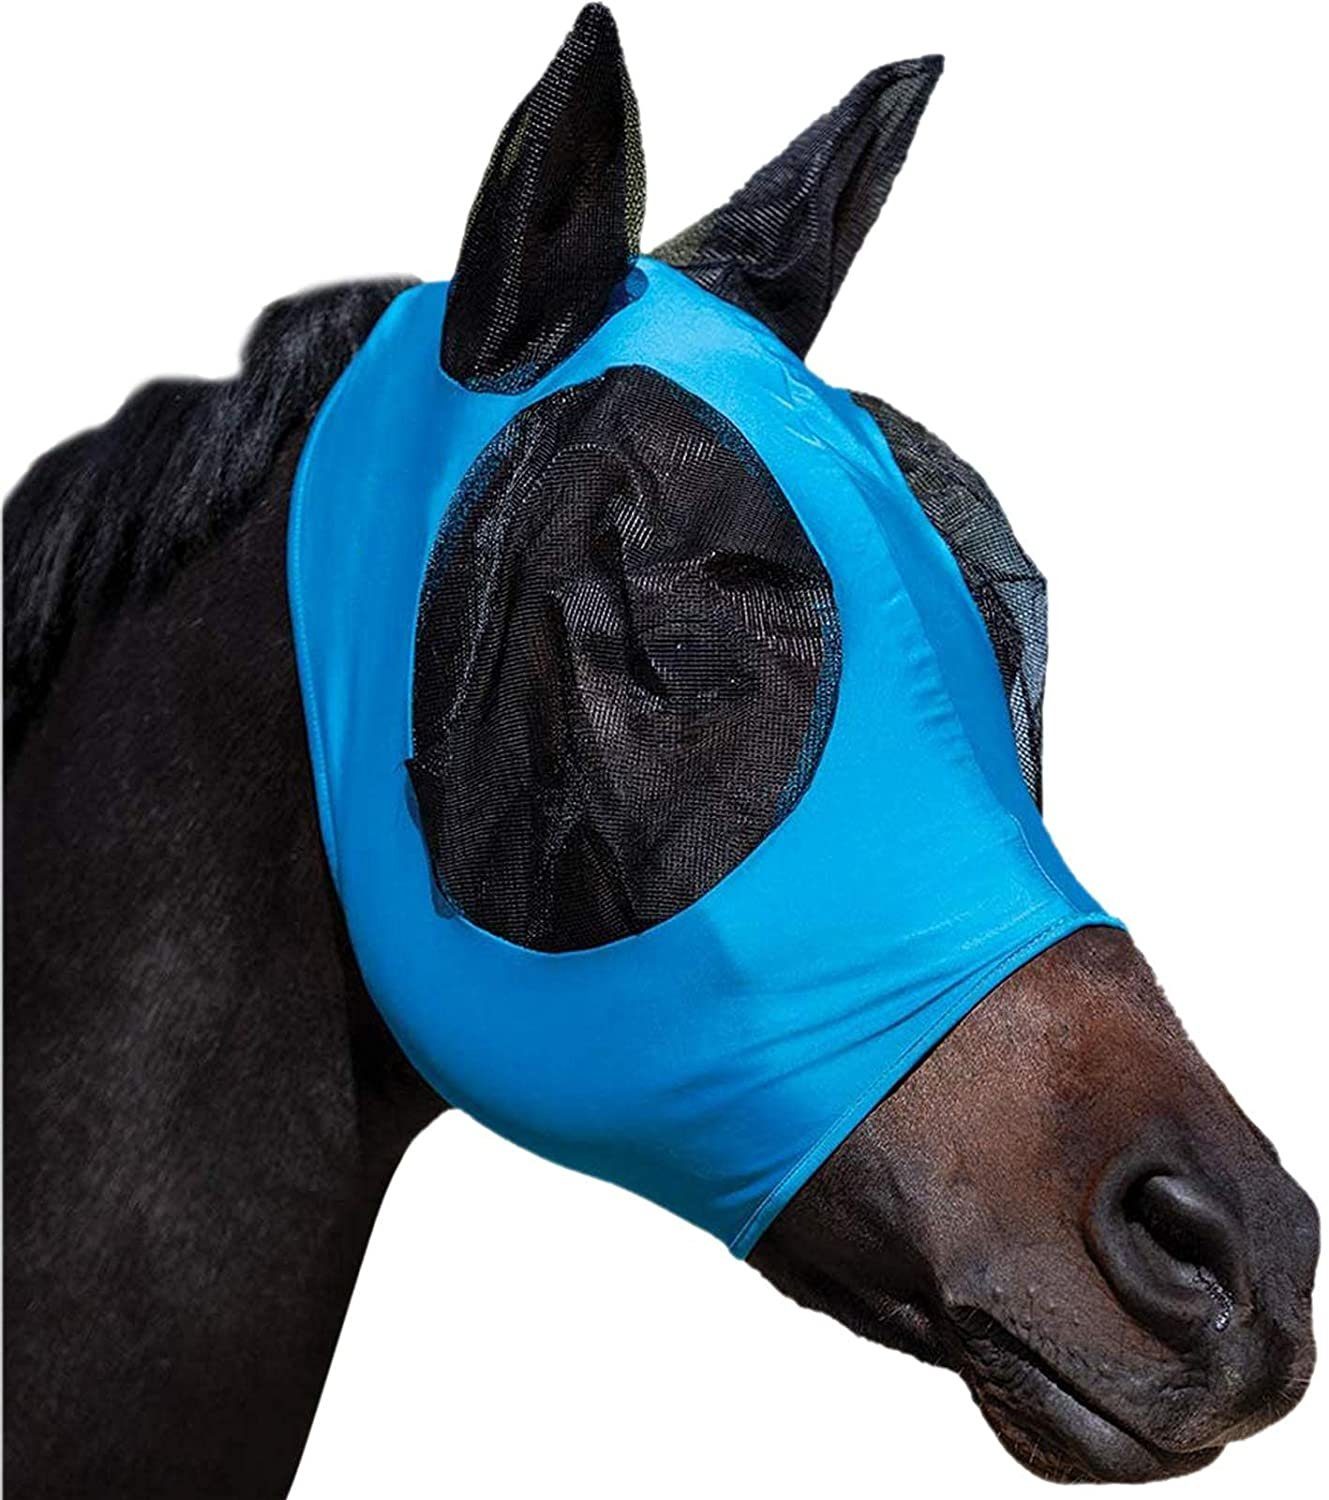 zggzerg Fliegenmaske Zggzerg Komfort Hervorragender Pferd Blau Fliegenmasken